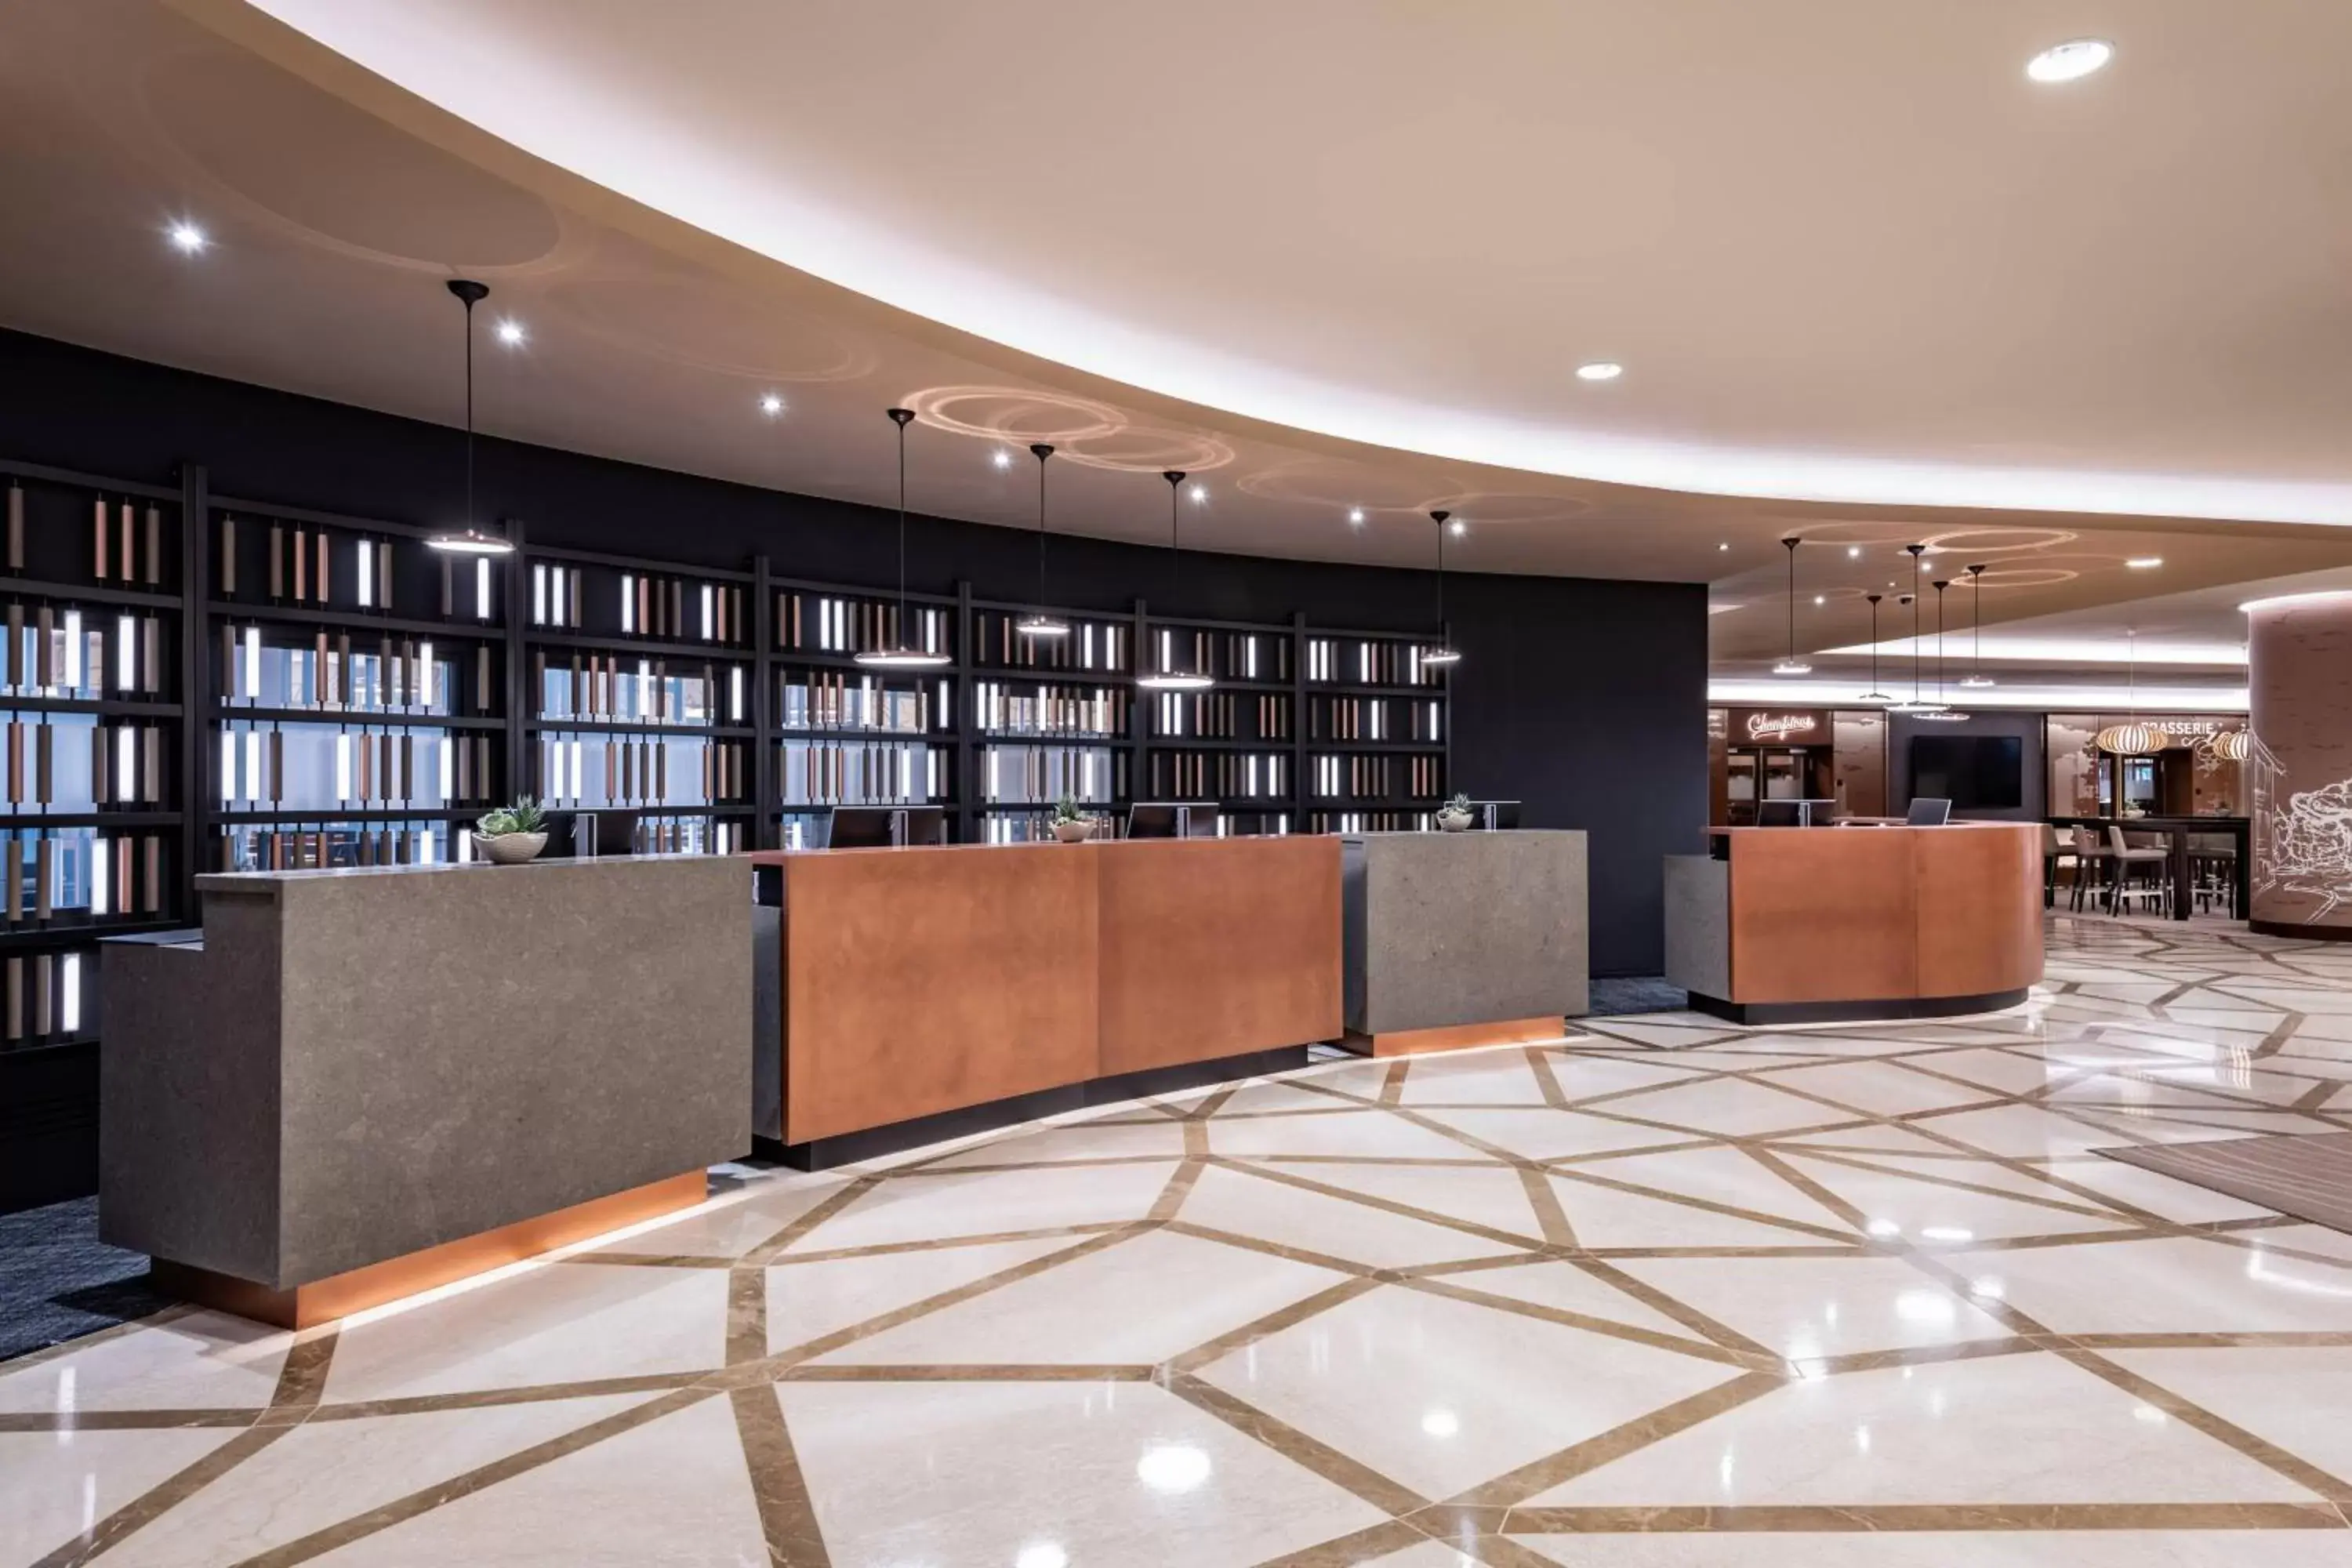 Lobby or reception in Frankfurt Marriott Hotel